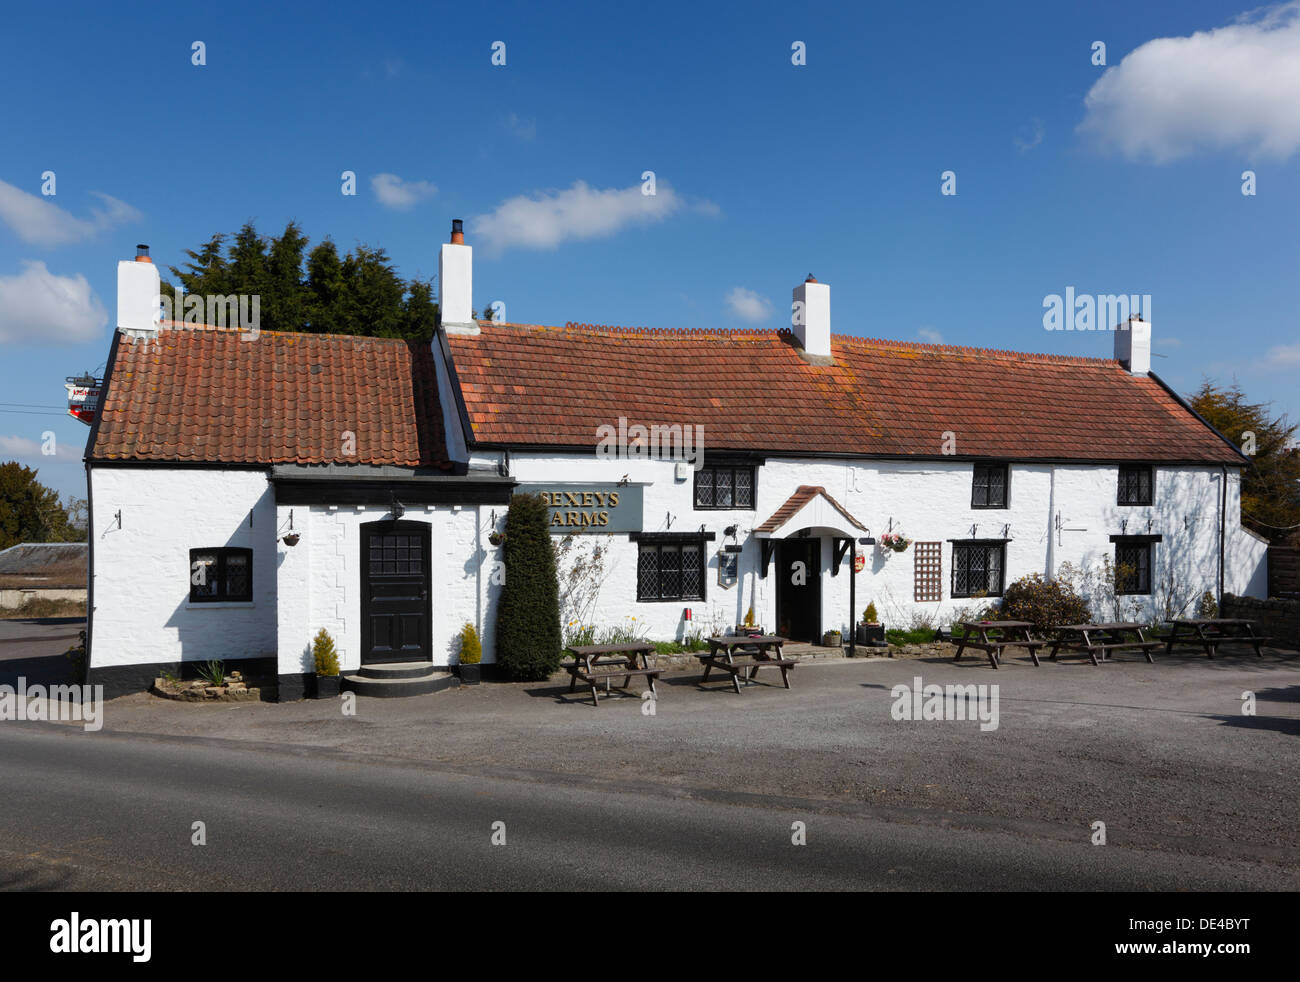 Sexey's Arms Pub rural en Blackford. Somerset. Inglaterra. En el Reino Unido. Foto de stock